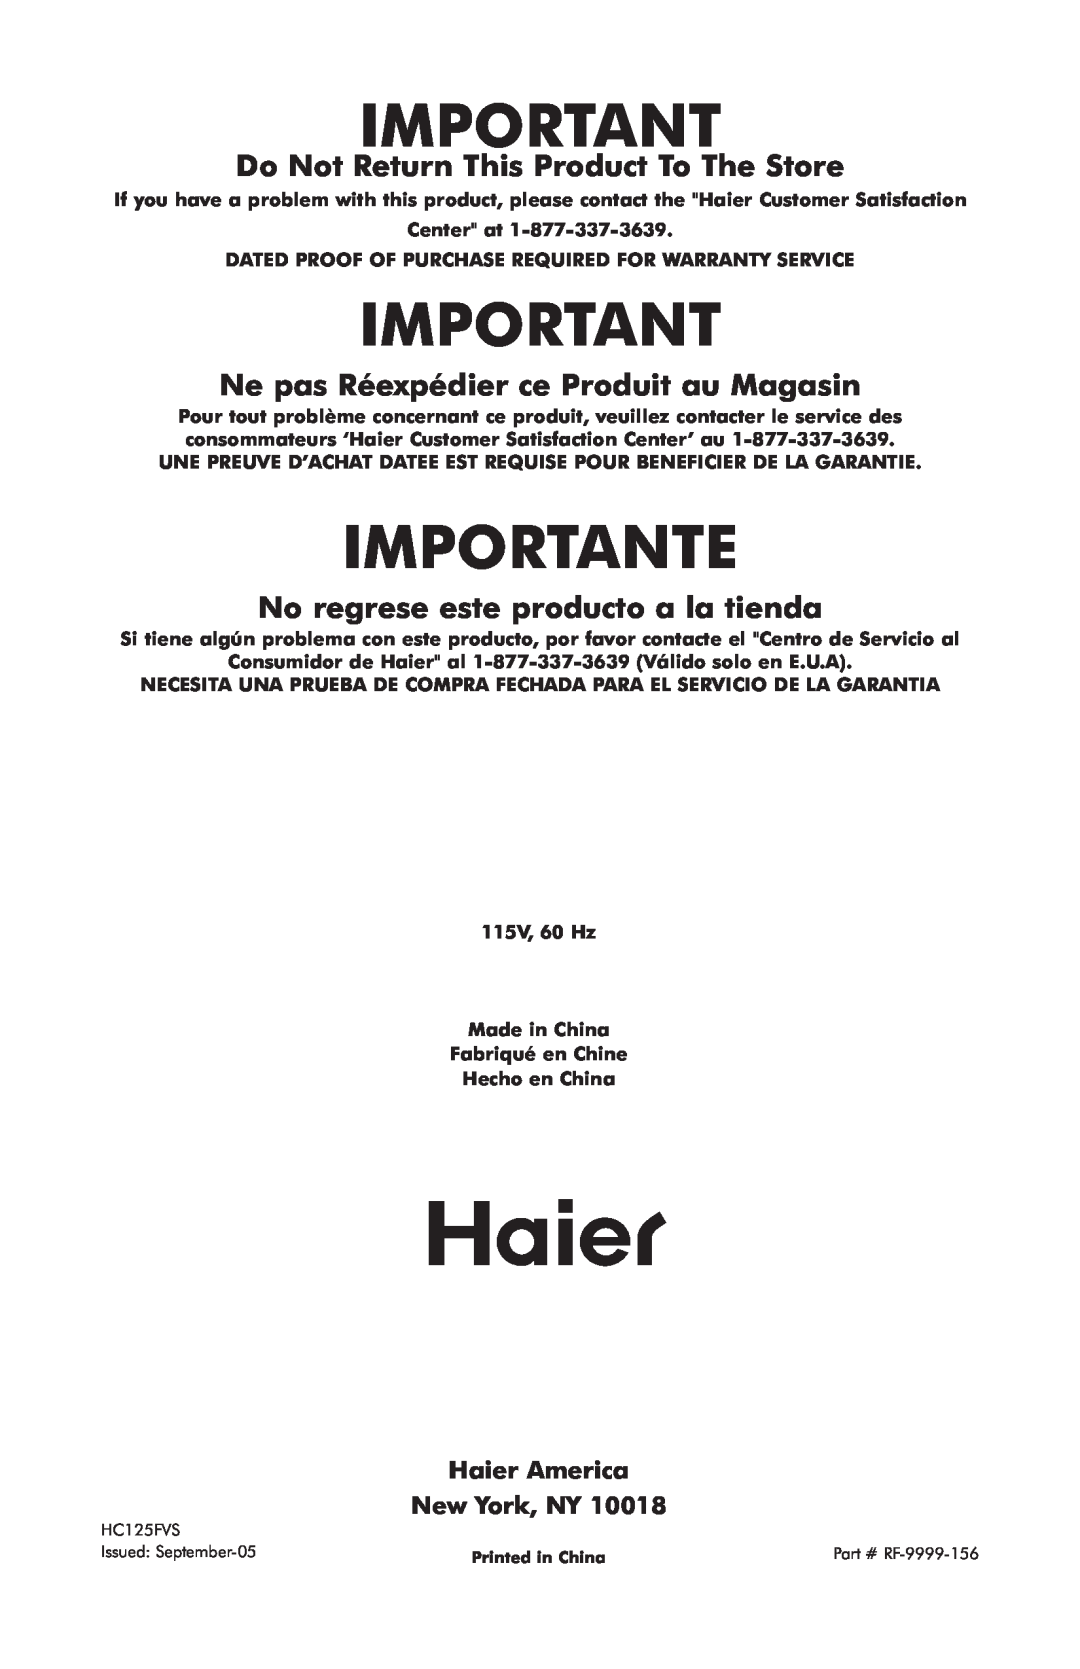 Haier hc125fvs user manual Importante, Do Not Return This Product To The Store, Ne pas Réexpédier ce Produit au Magasin 